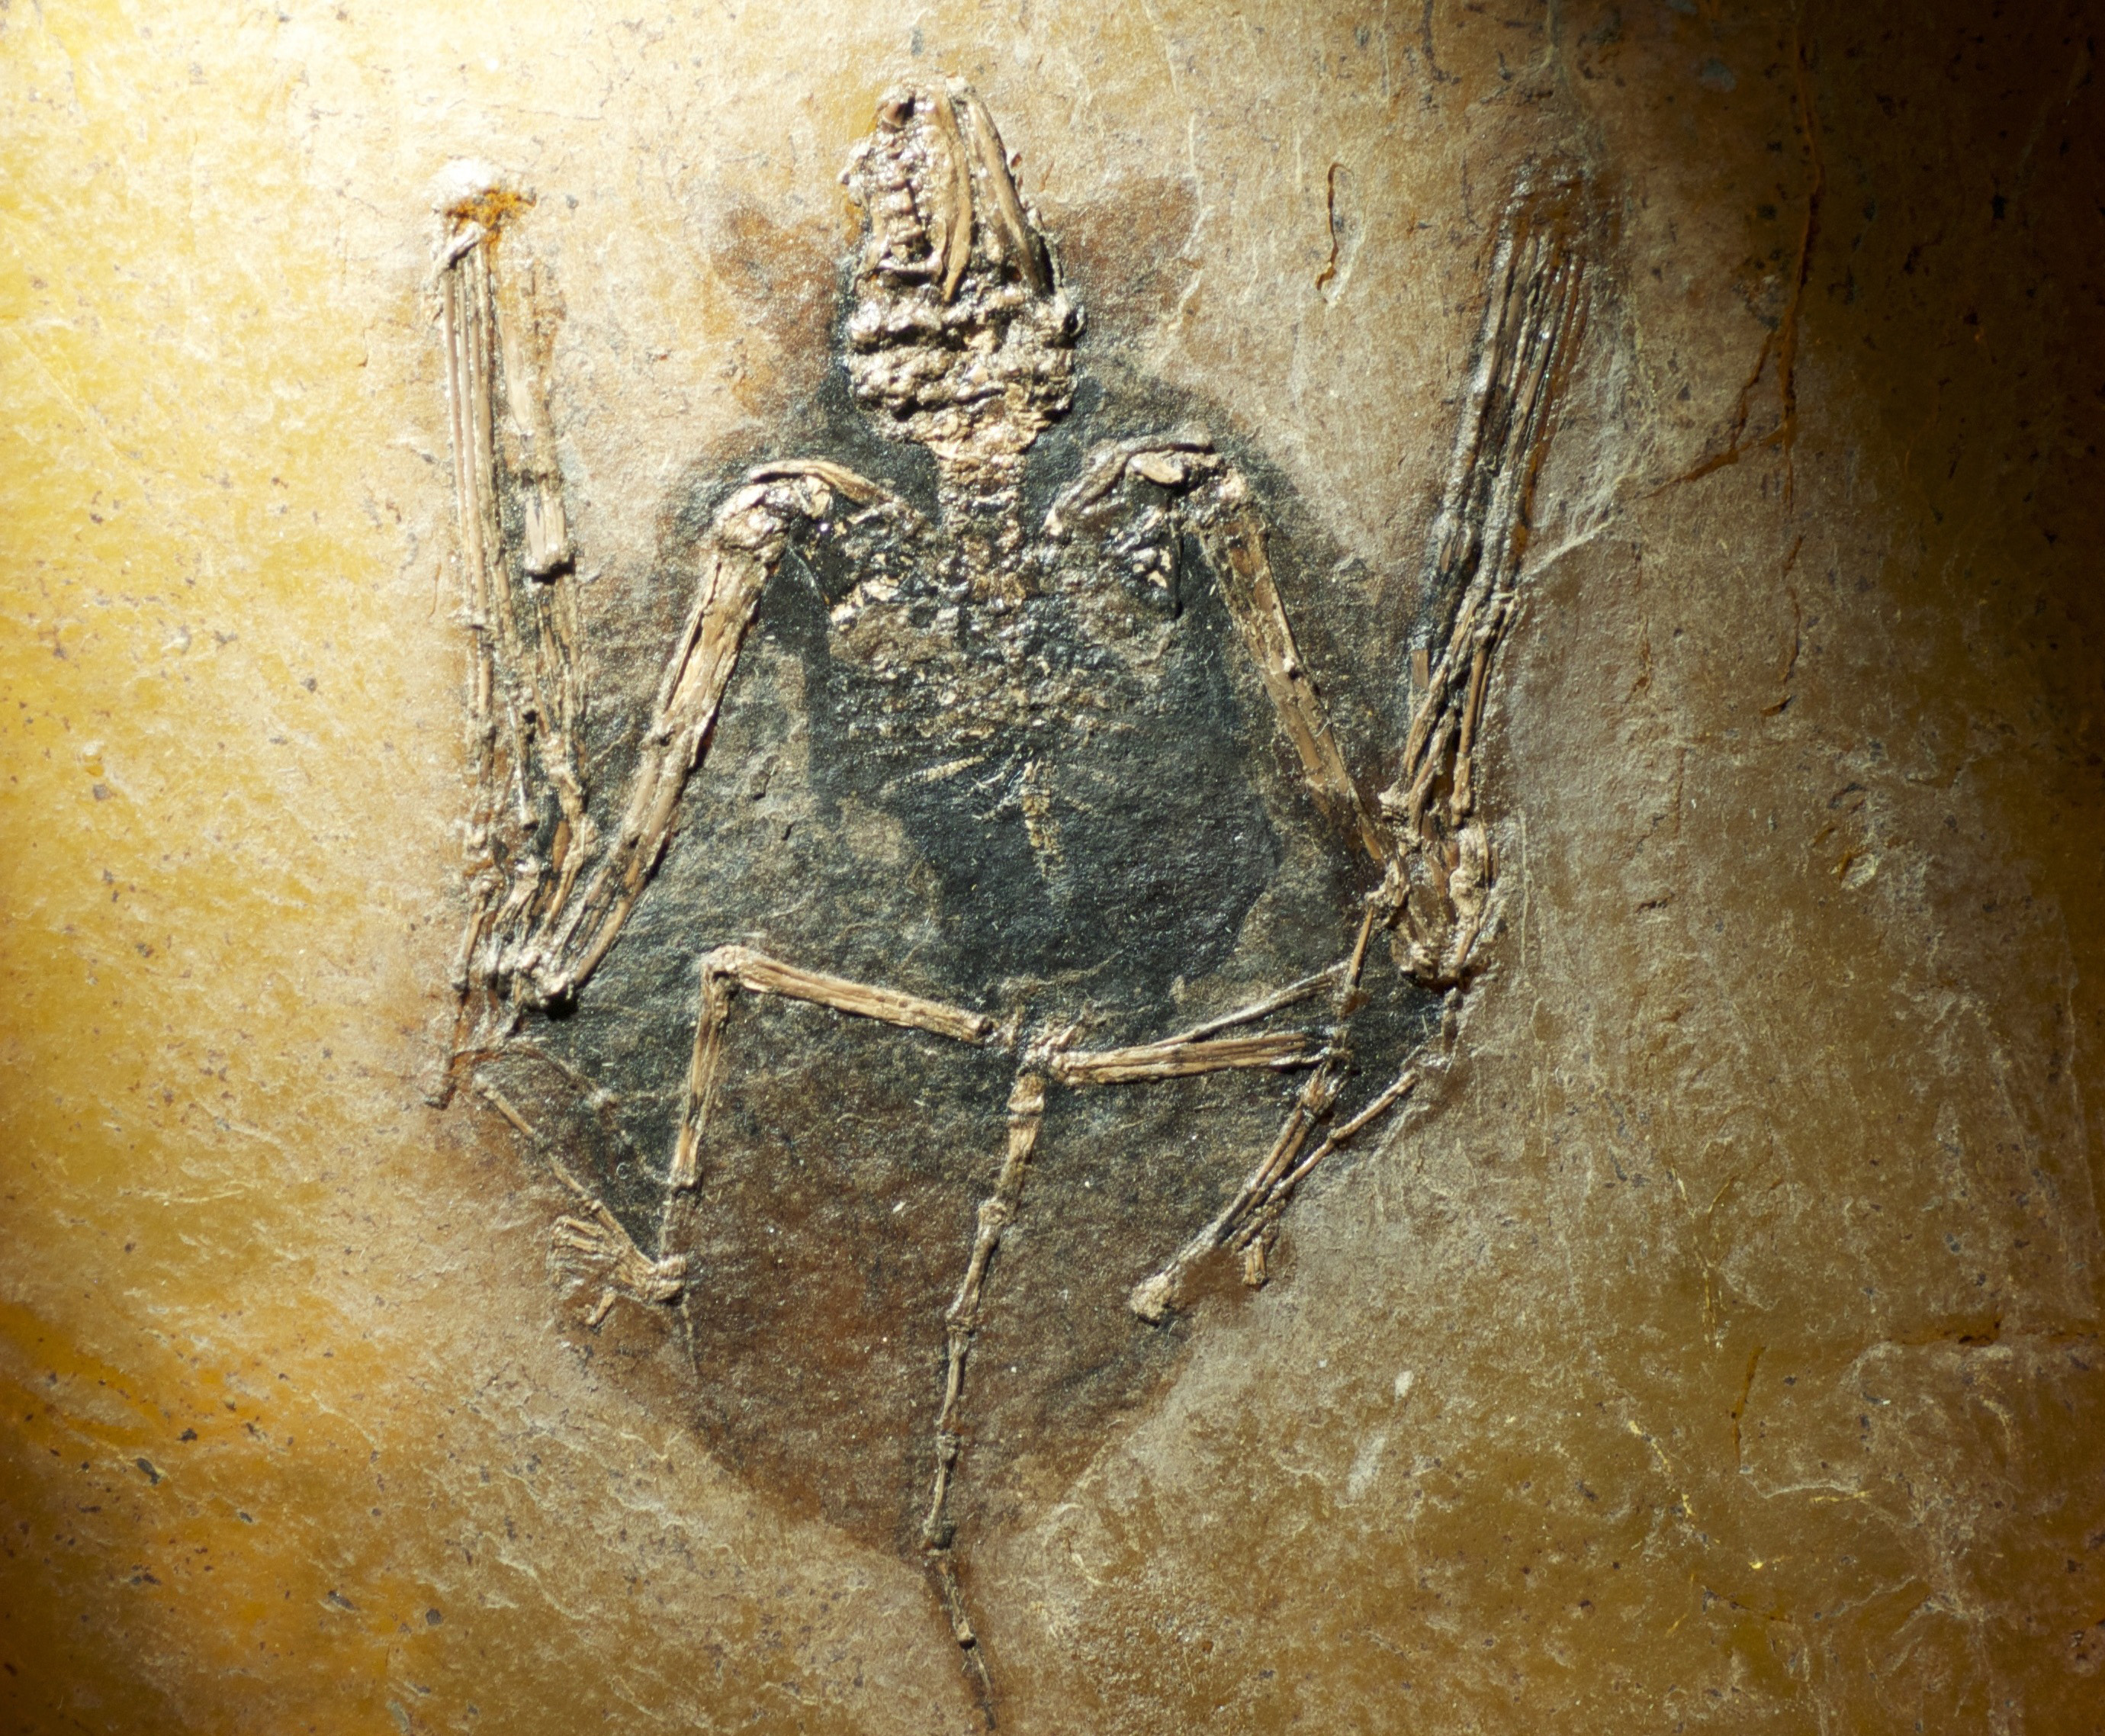 Bat fossil